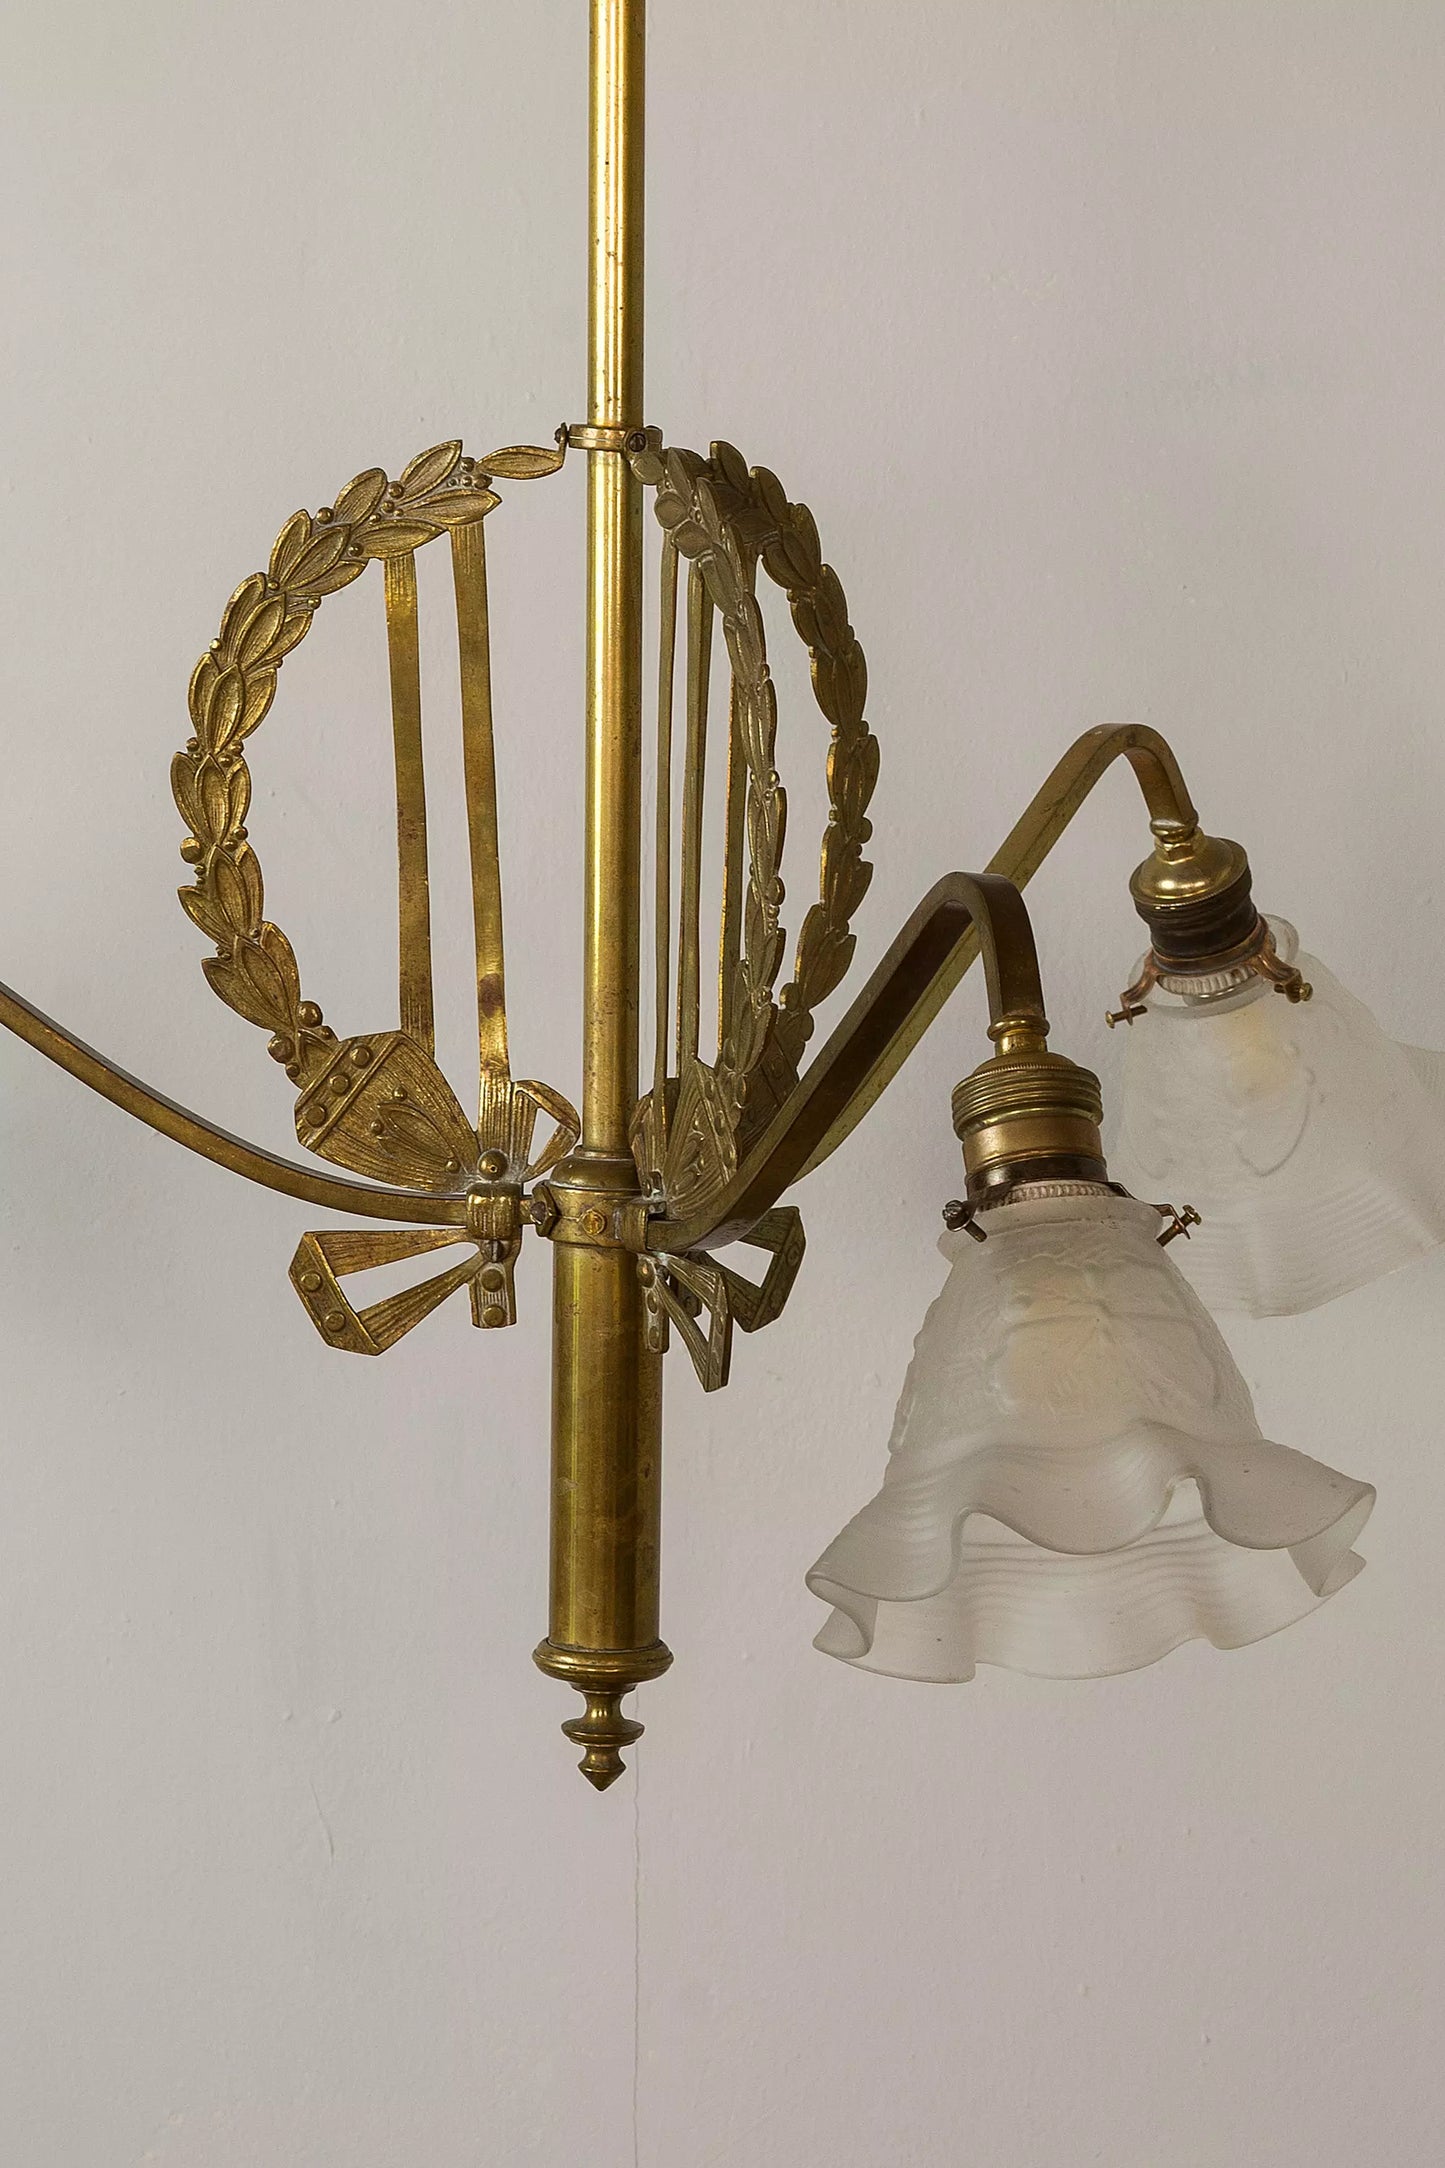 Lampadario italiano del primo Novecento, realizzato in ottone e caratterizzato da dettagli artistic.| Lo Stile Italiano